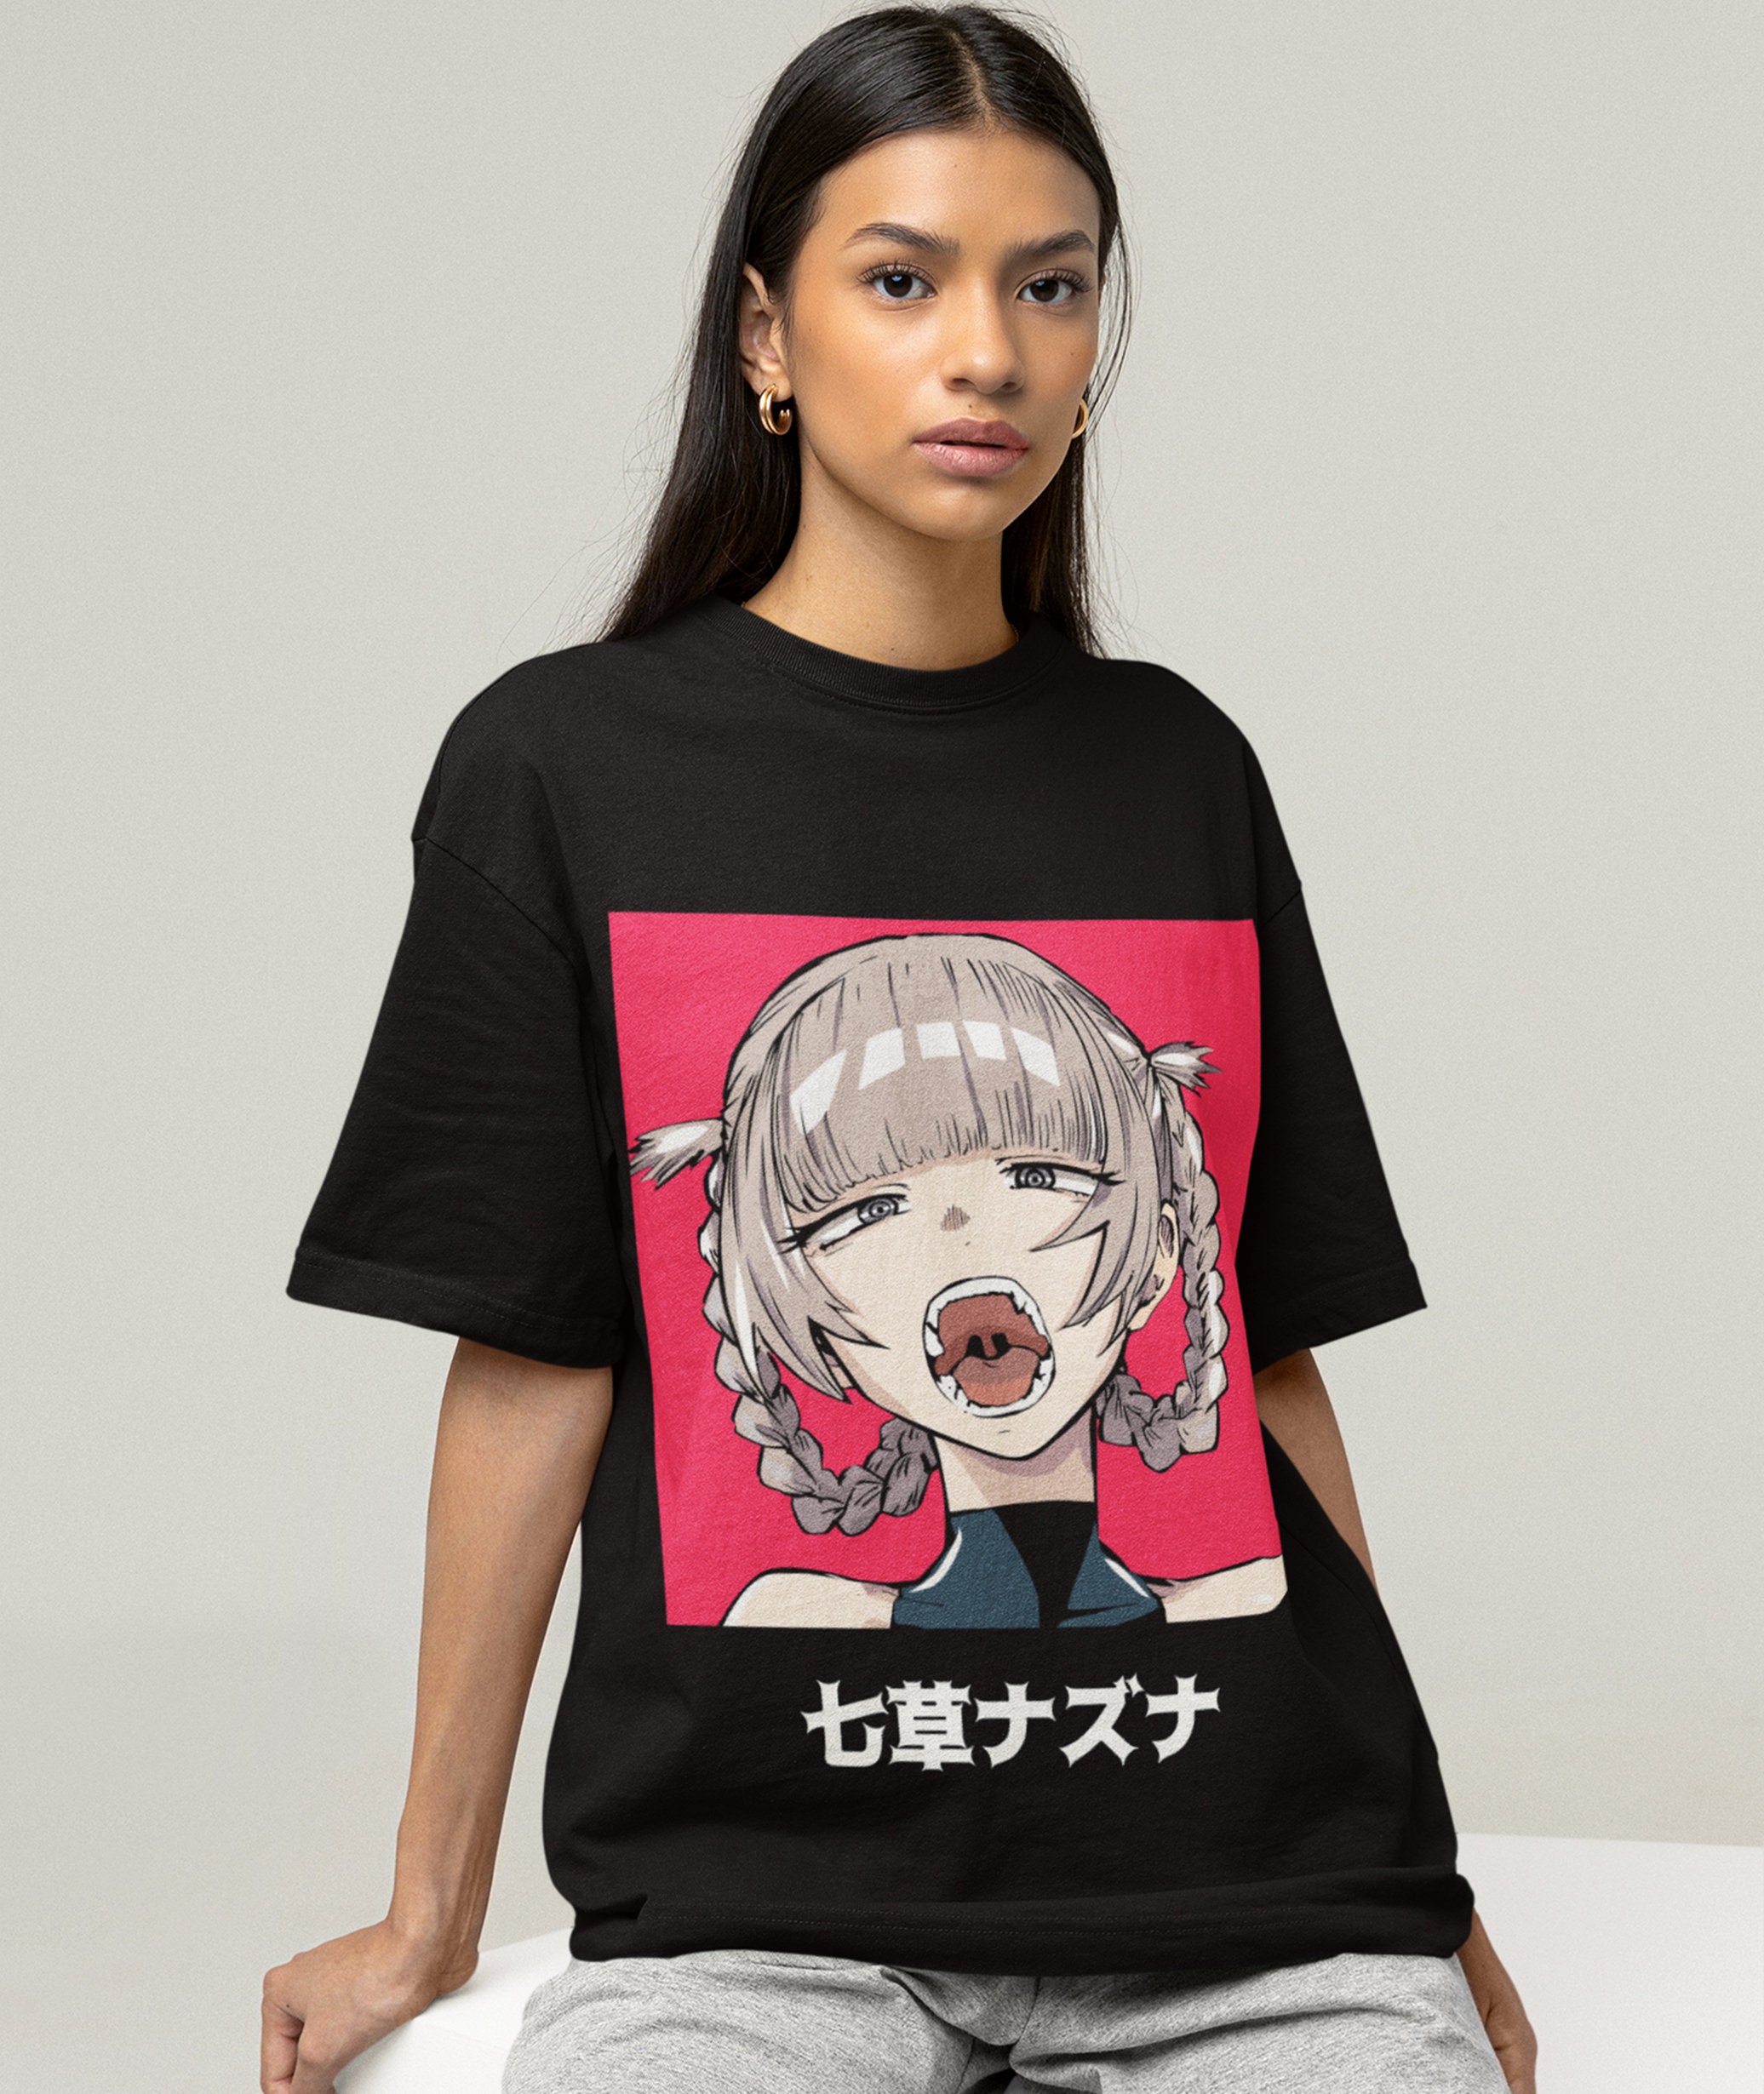 yofukashi no uta red Essential T-Shirt for Sale by deesmaylis